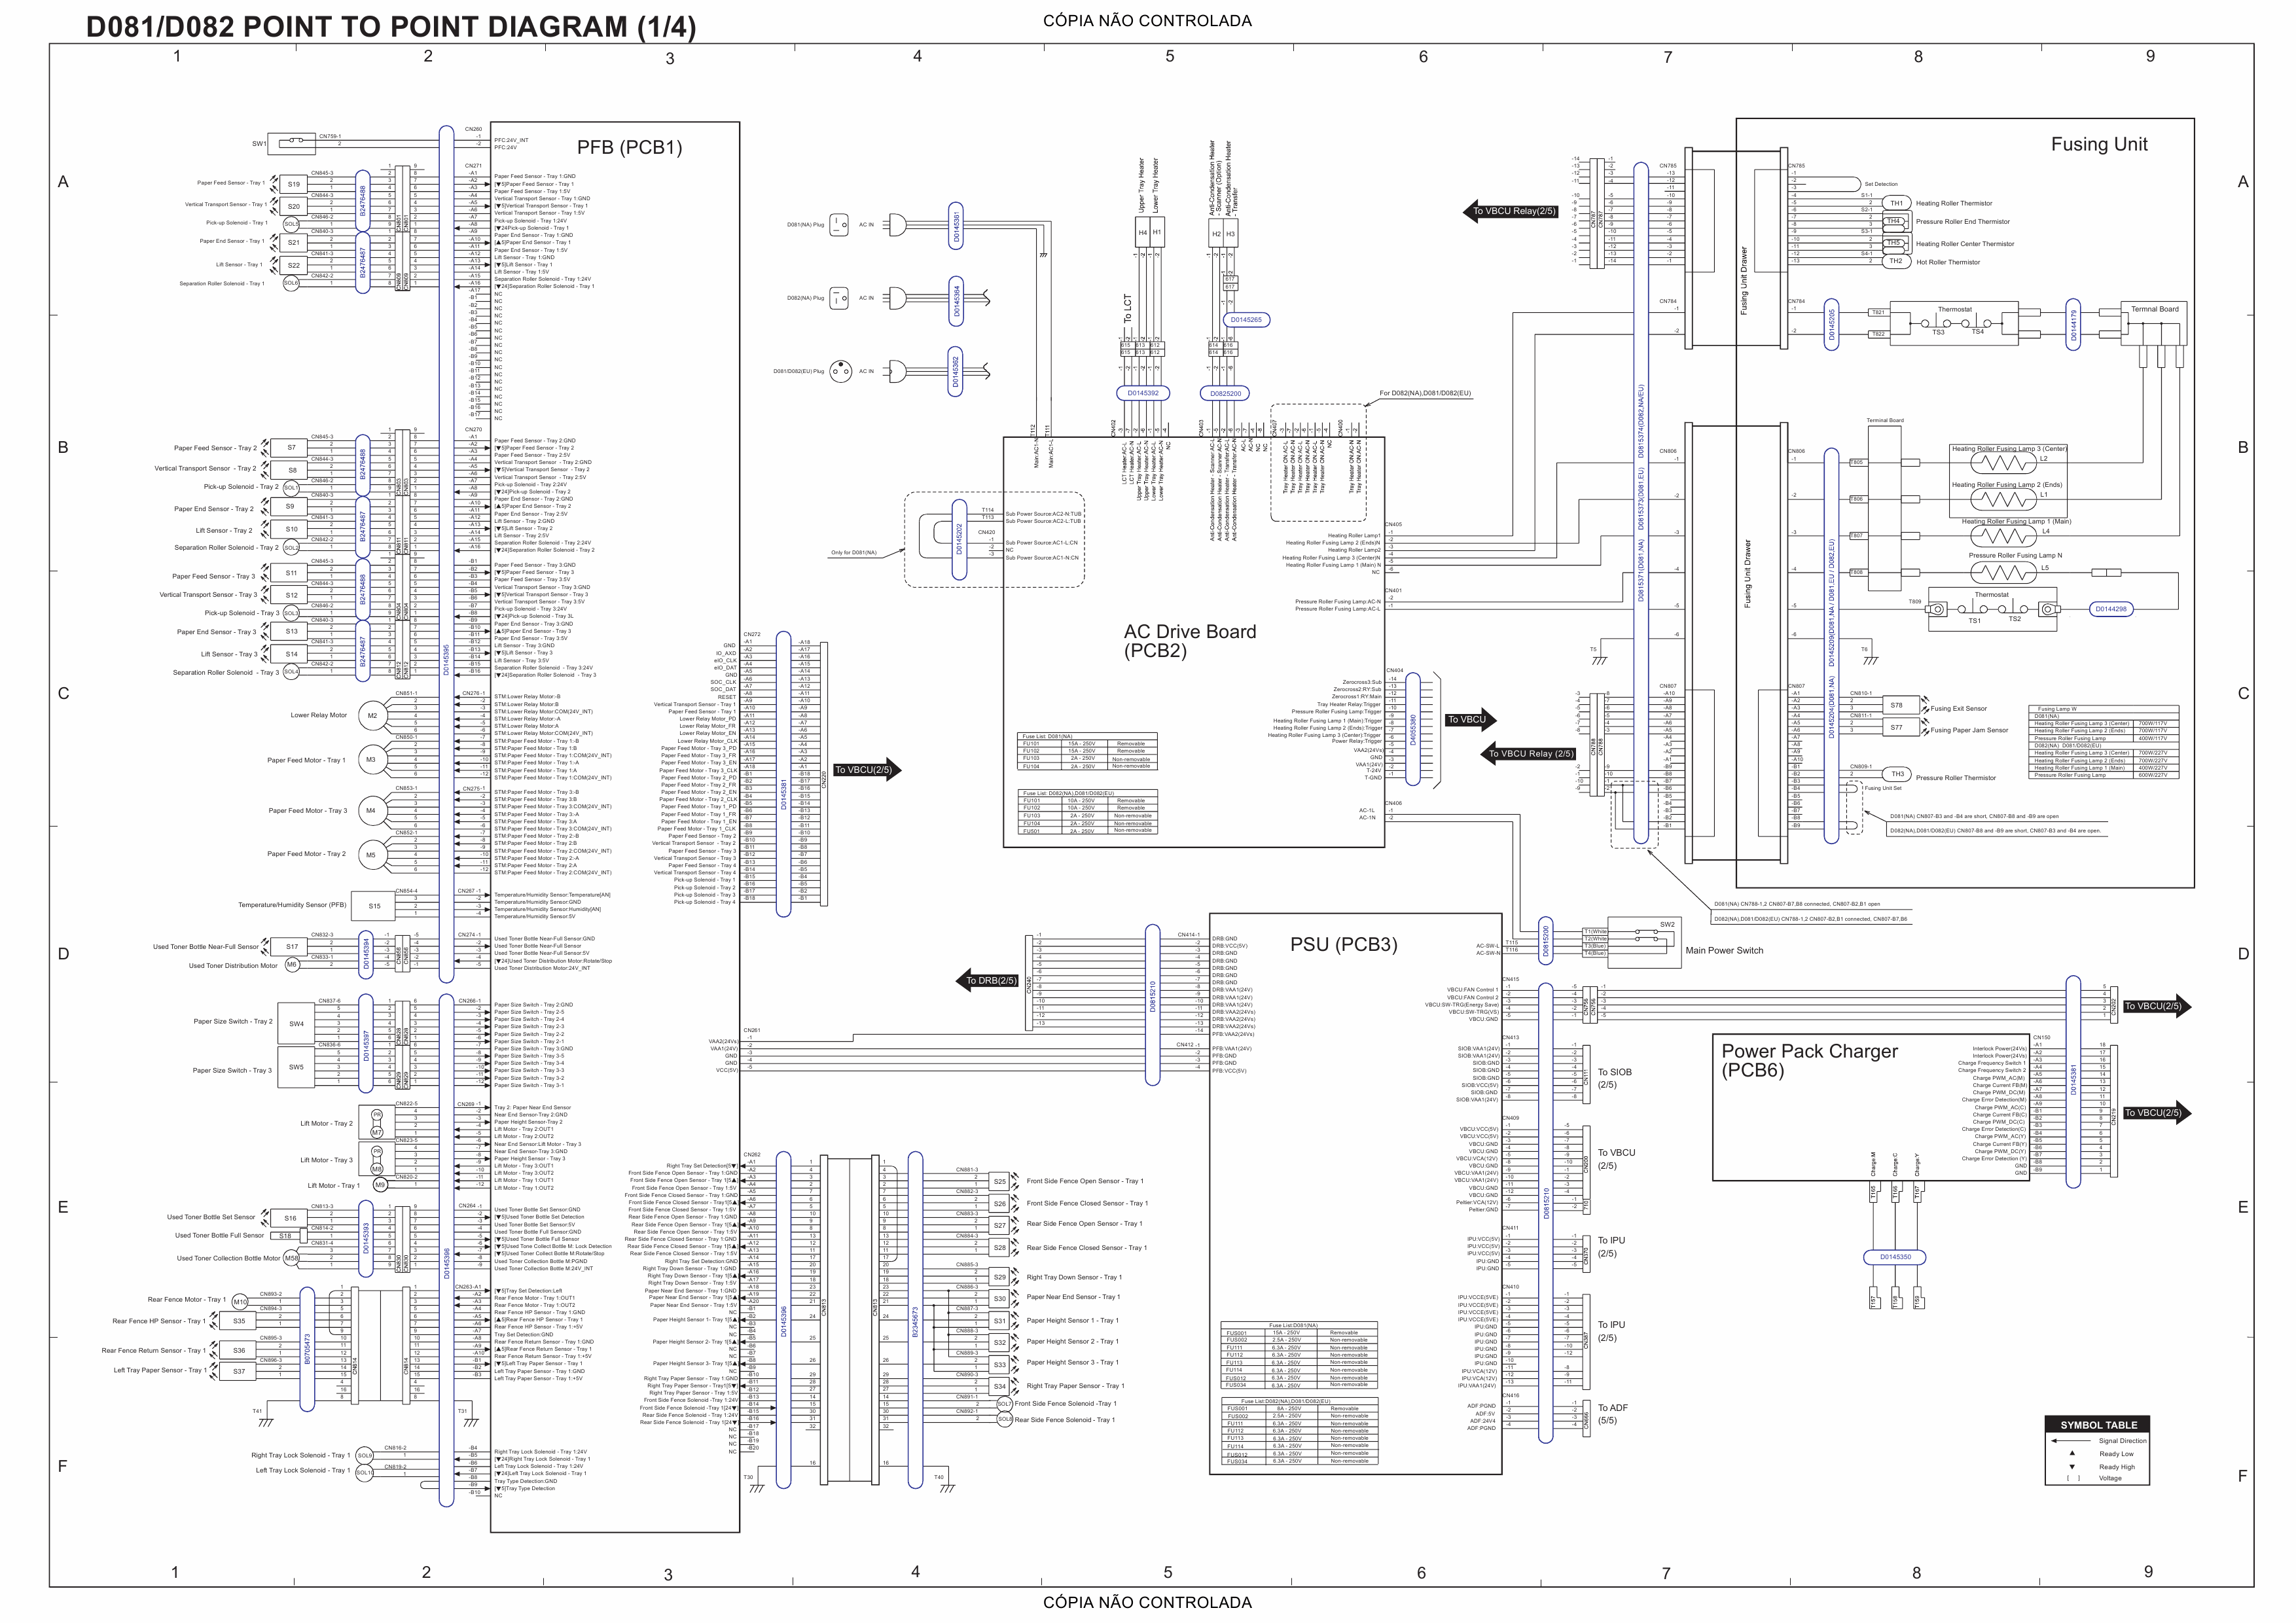 RICOH Aficio MP-C6501SP C7501SP D081 D082 Circuit Diagram-1